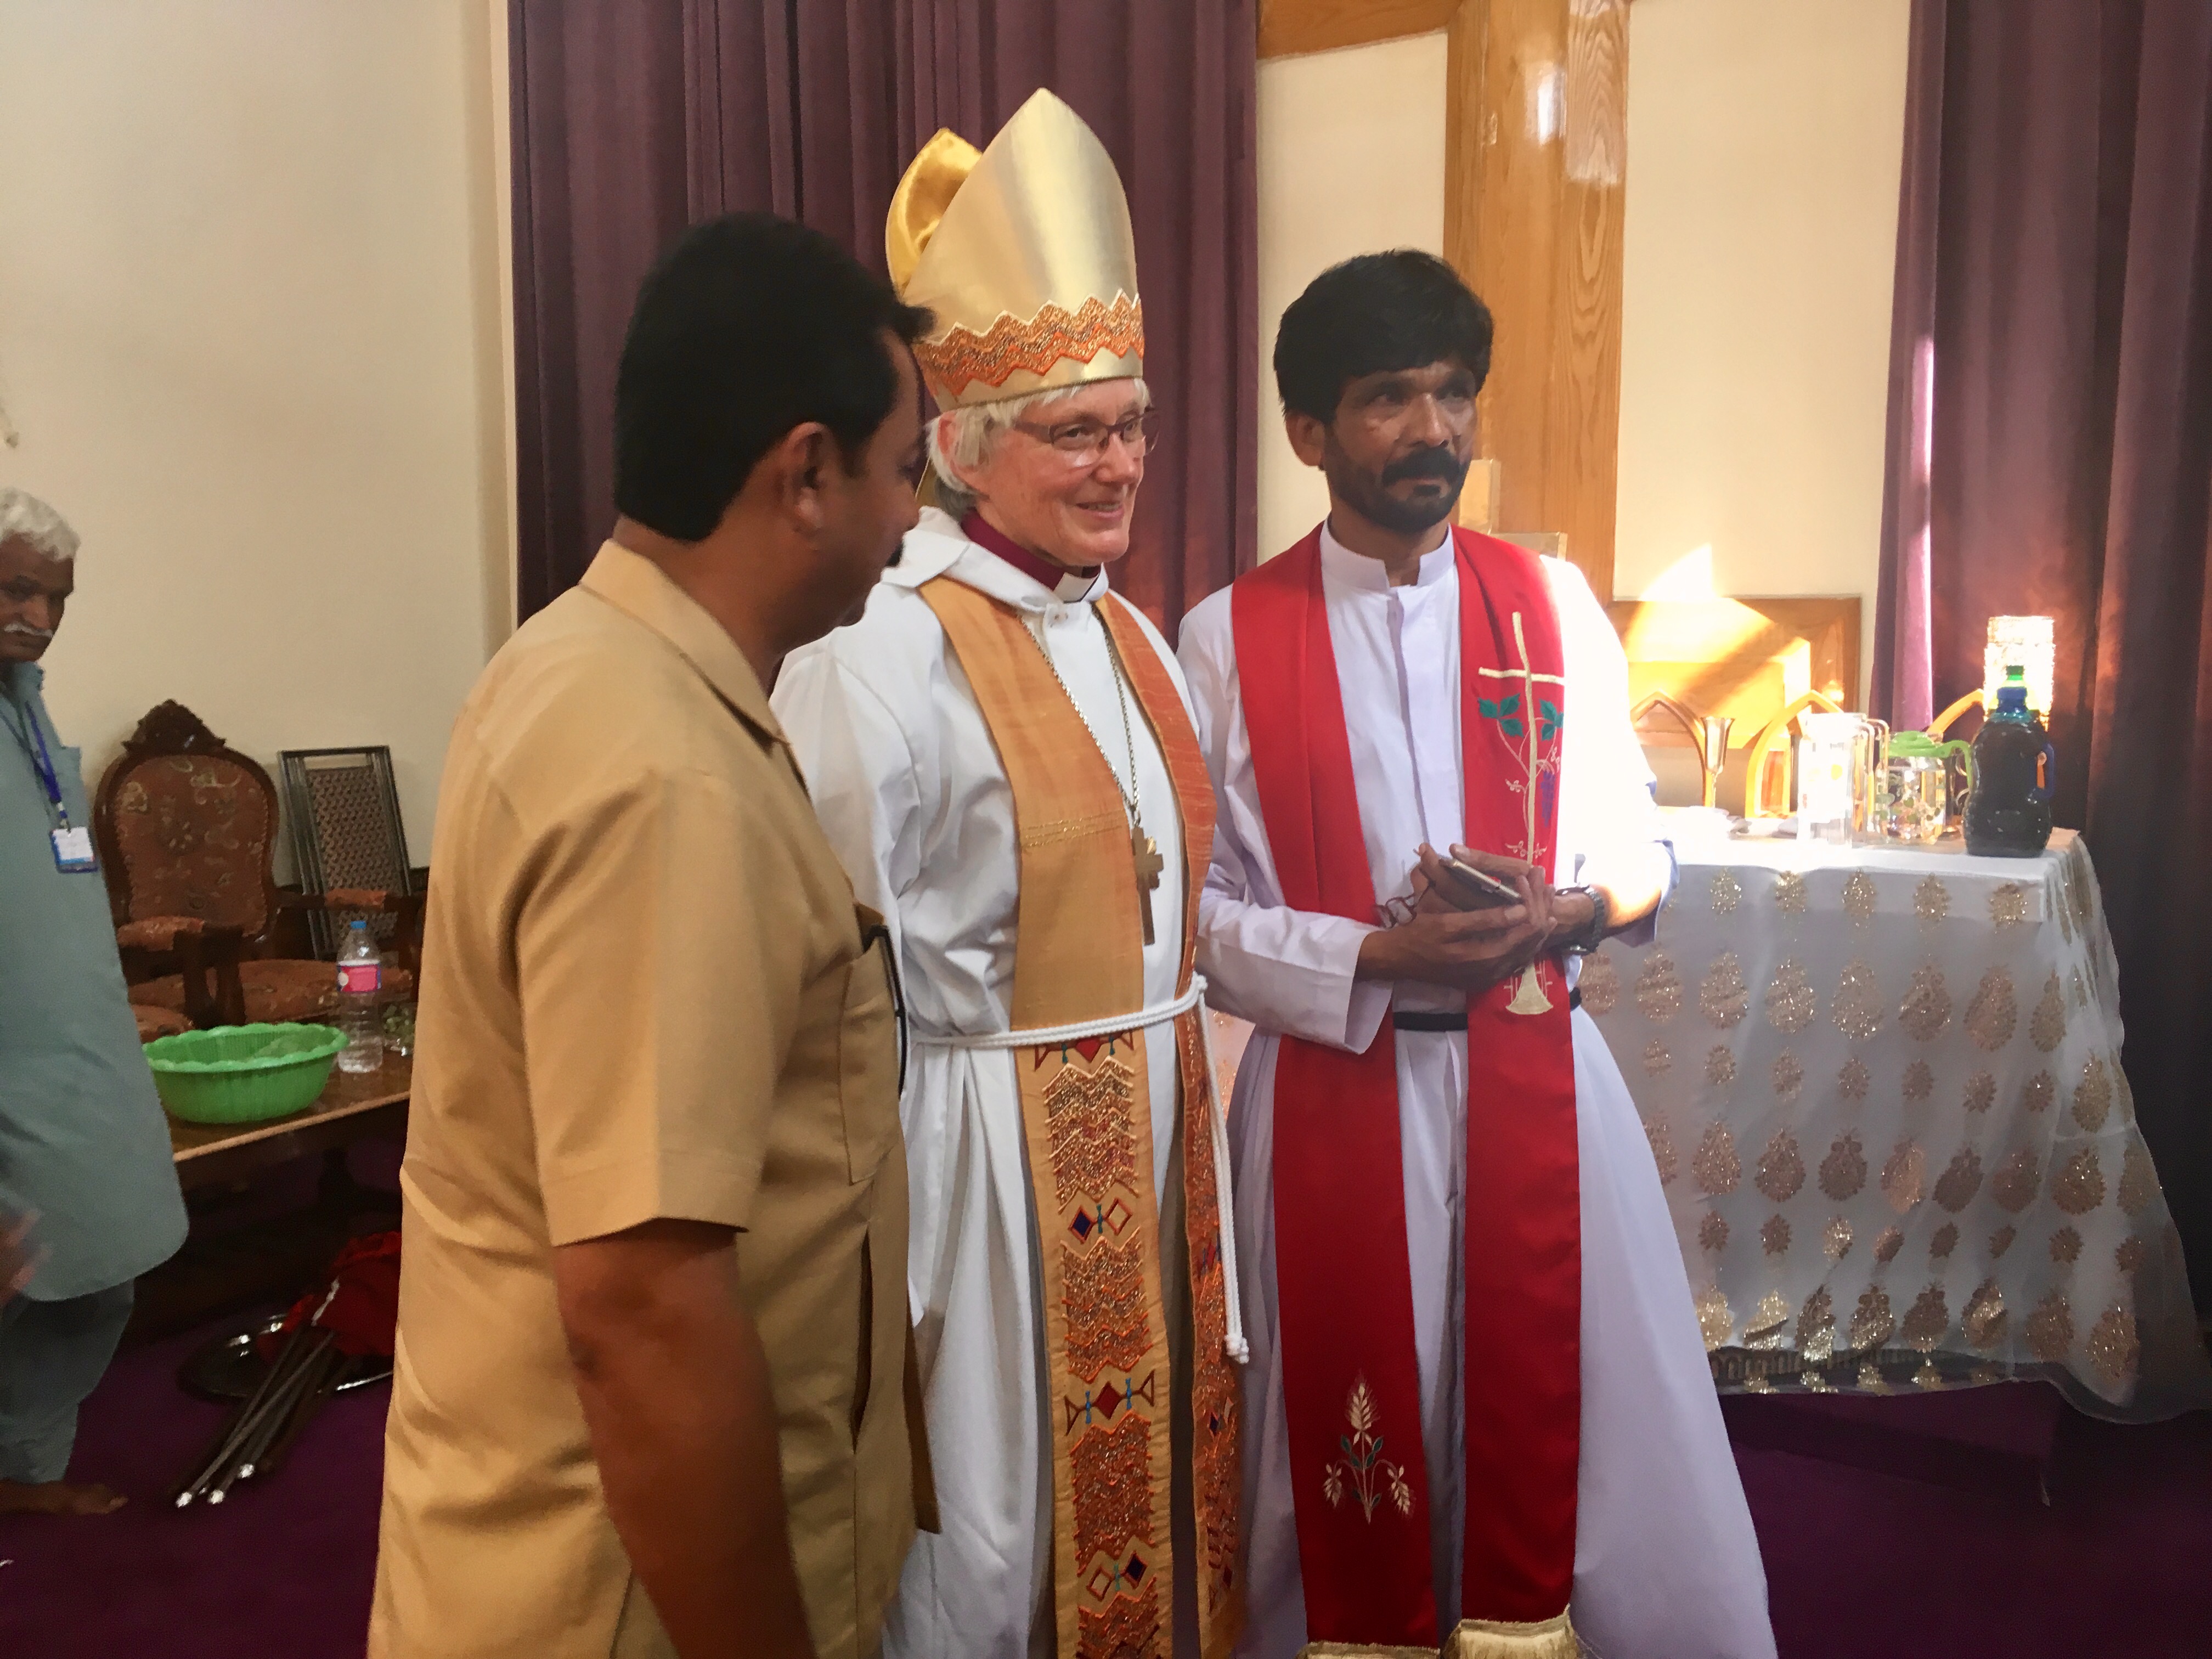 Ärkebiskop Antje i mitra tillsammans med representanter för Church of Pakistan.